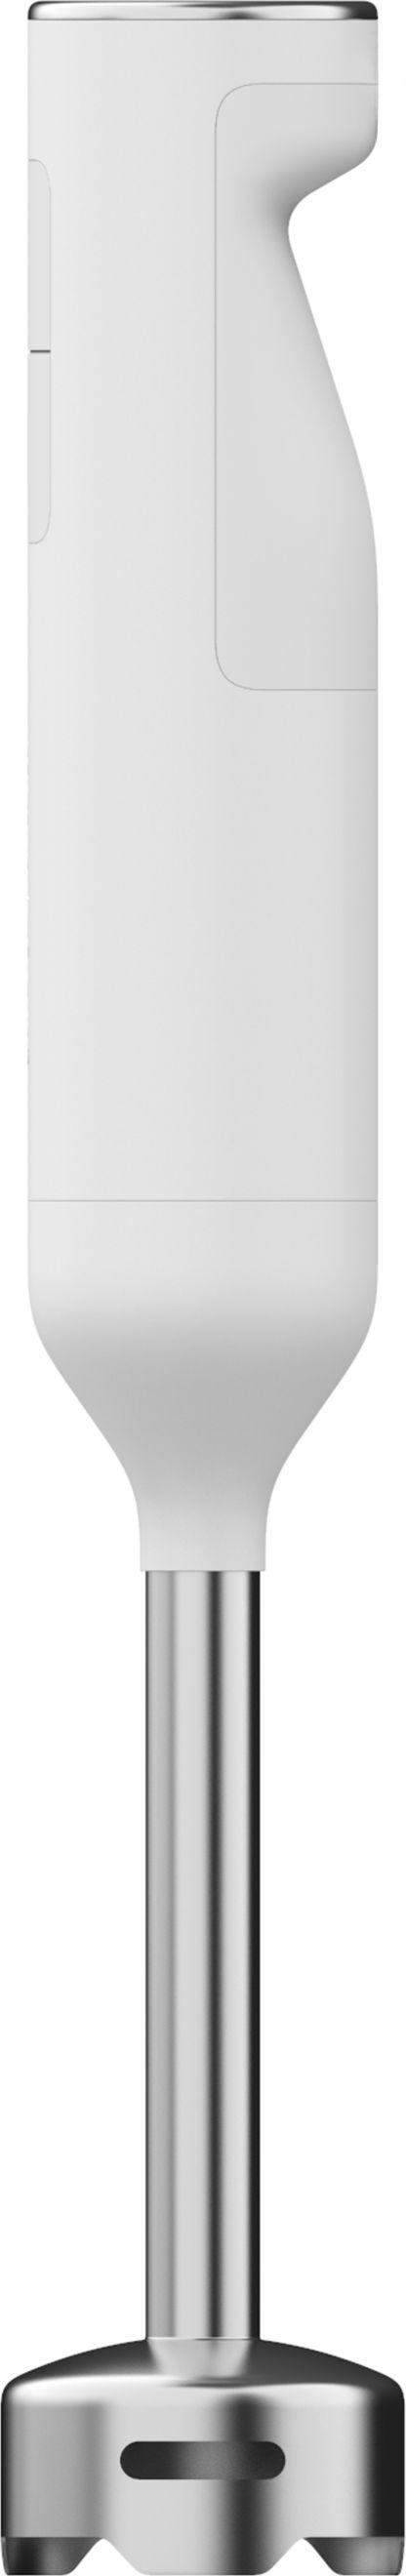 Gorenje HB 600 ORAW Štapni mikser, 600 W, Beli